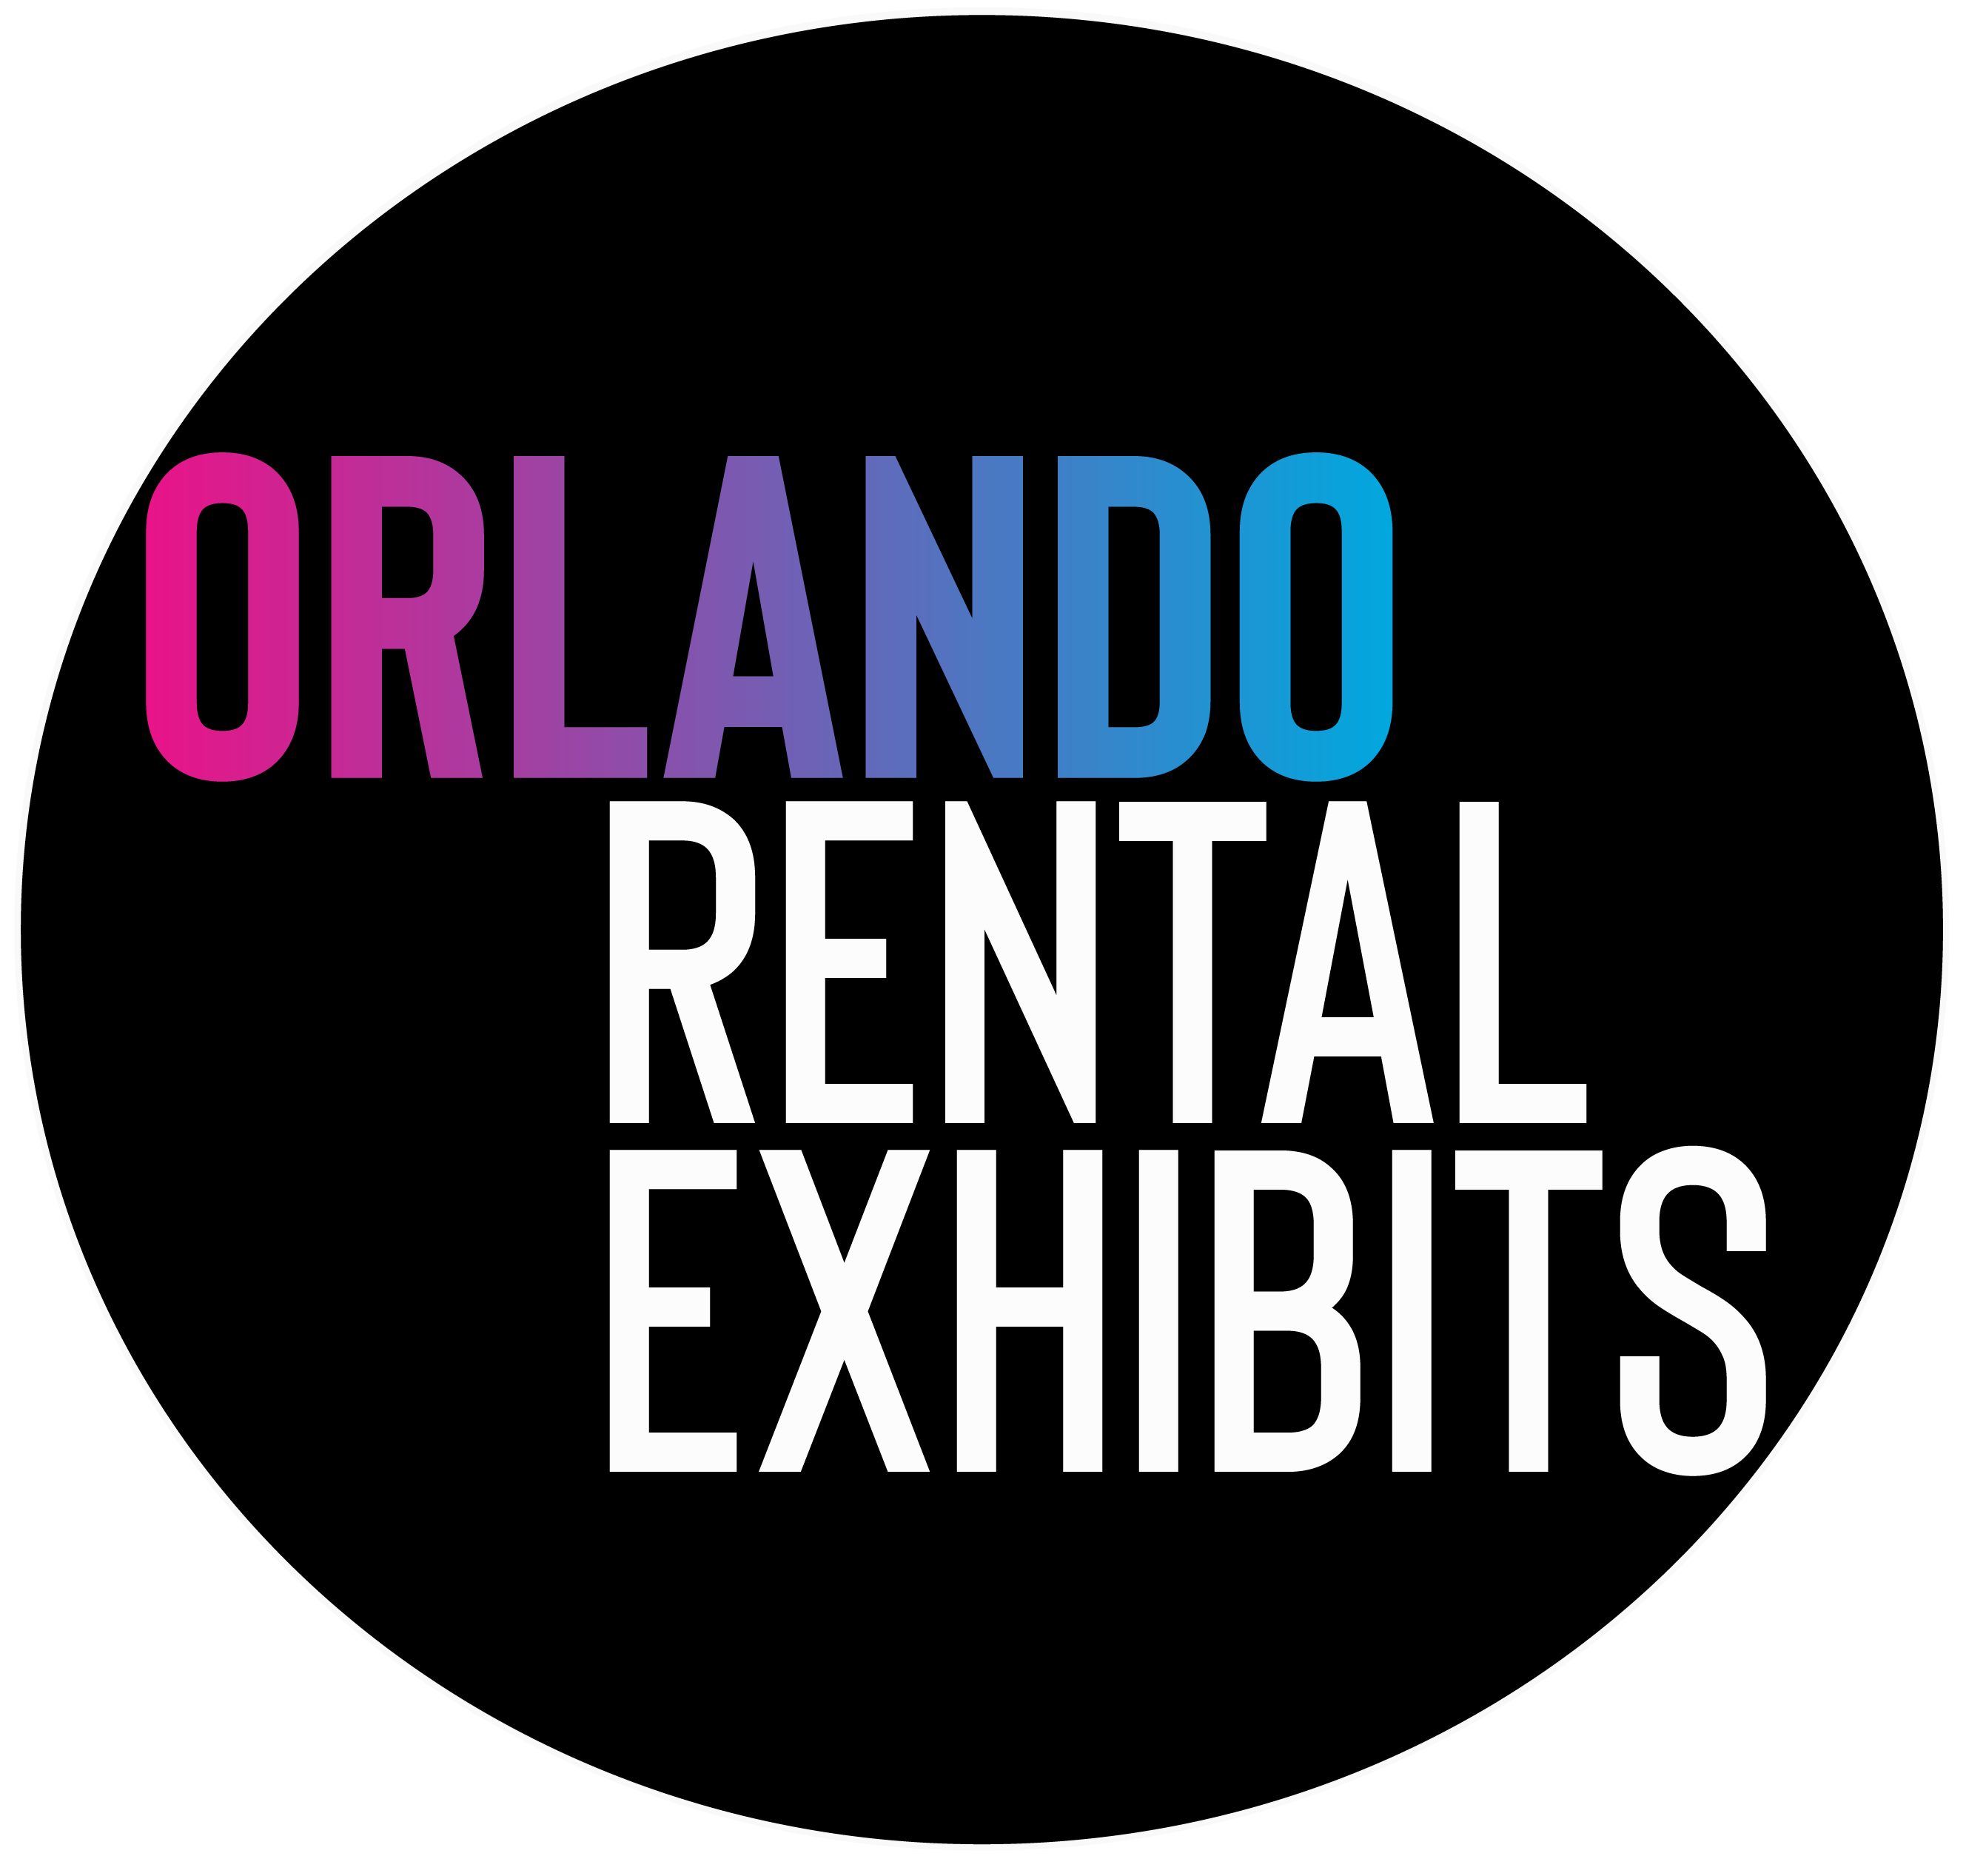 Orlando Rental Exhibits